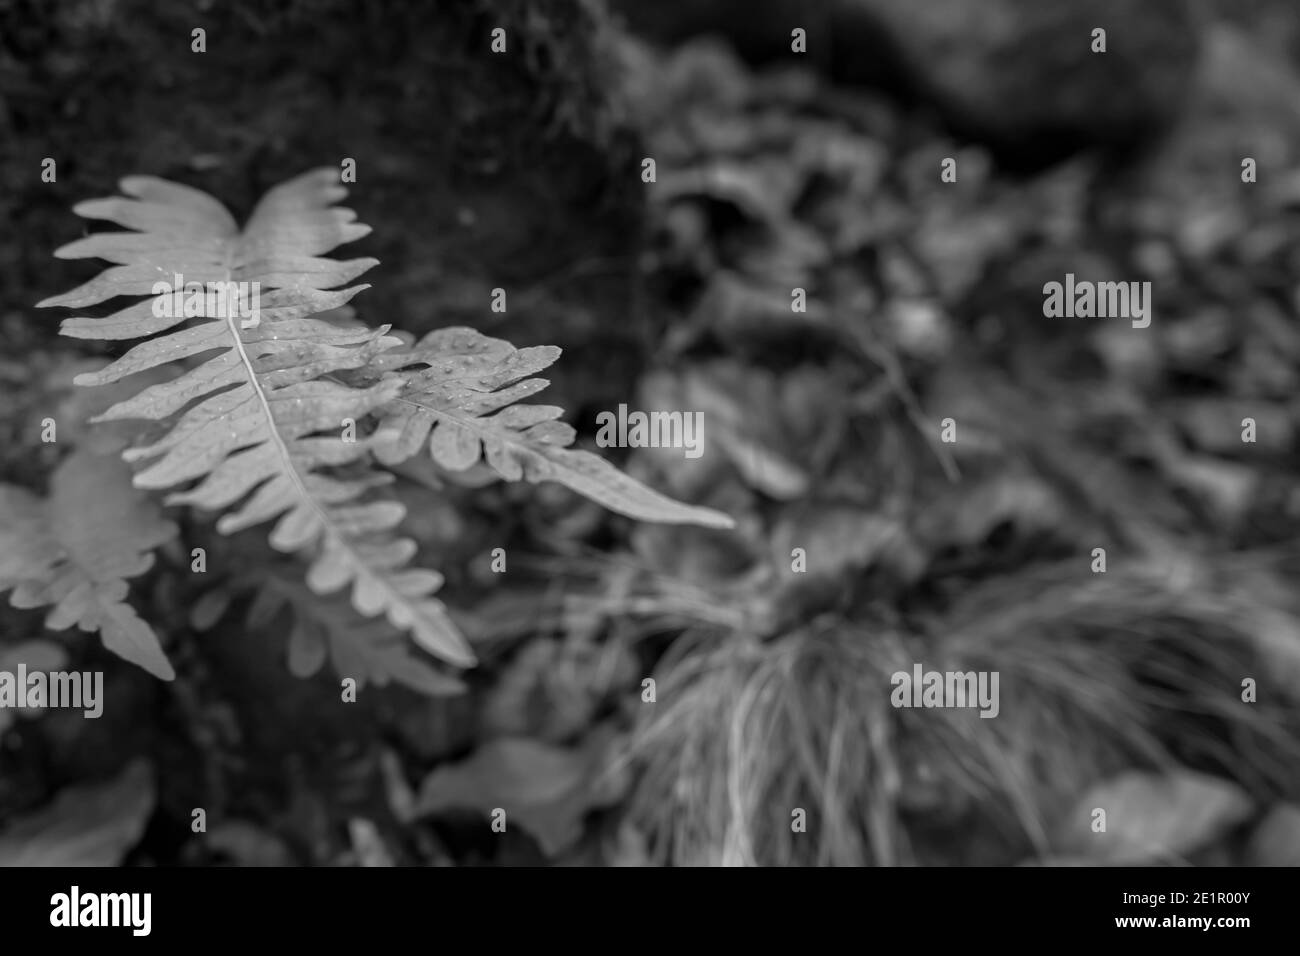 Pteridium aquilinum o aquila fern.Nature pianta background.Fashion design concetto. Stile fotografico in bianco e nero.Copia spazio per il testo Foto Stock